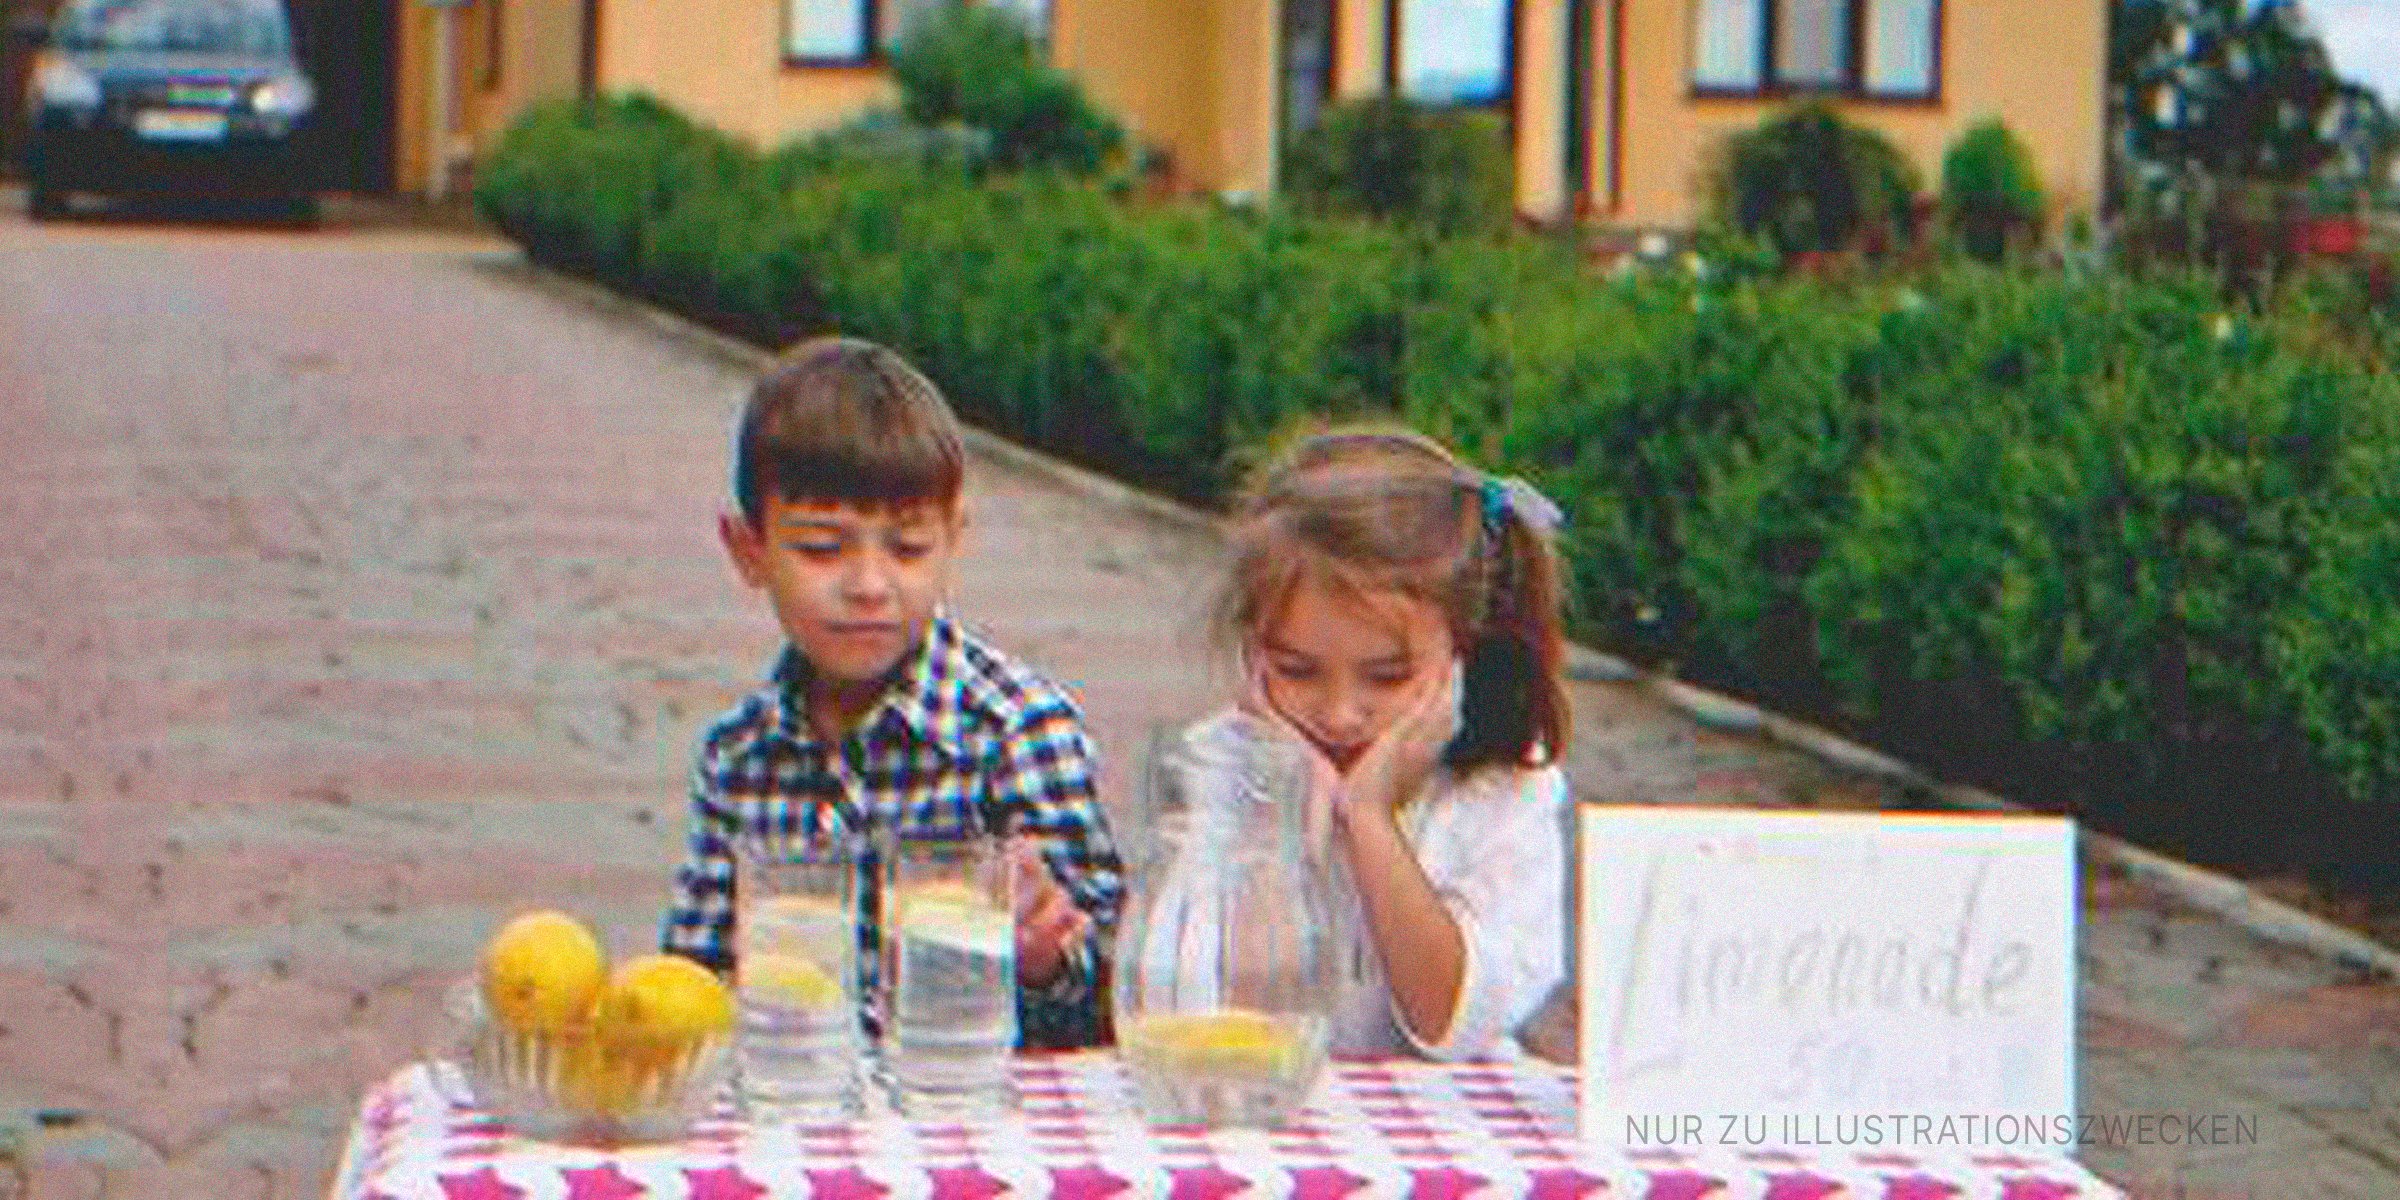 Ein Junge und ein Mädchen an ihrem Limonadenstand | Quelle: Shutterstock